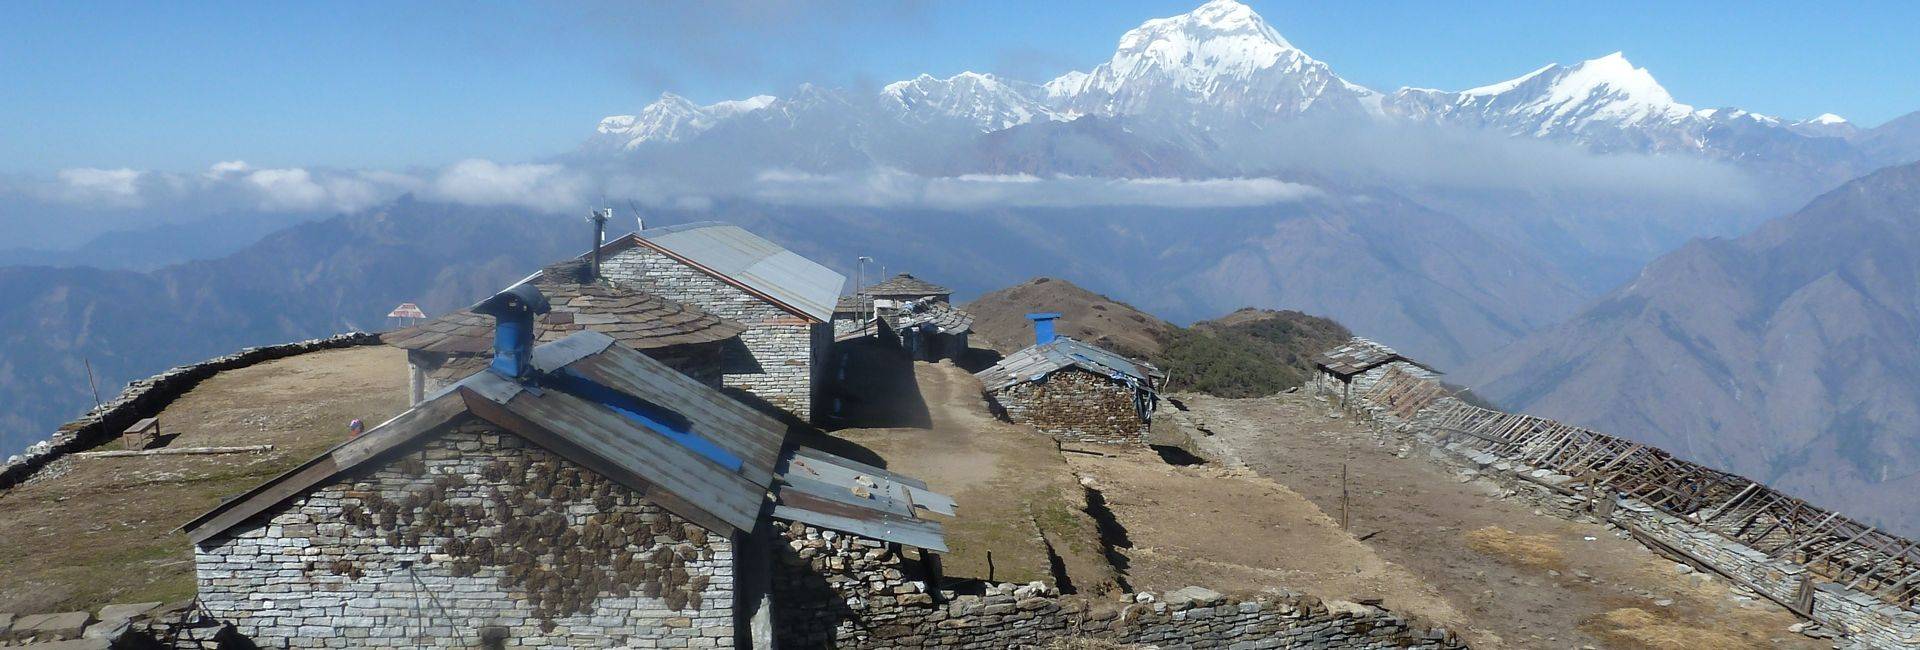 Kopra Ridge trek in Nepal